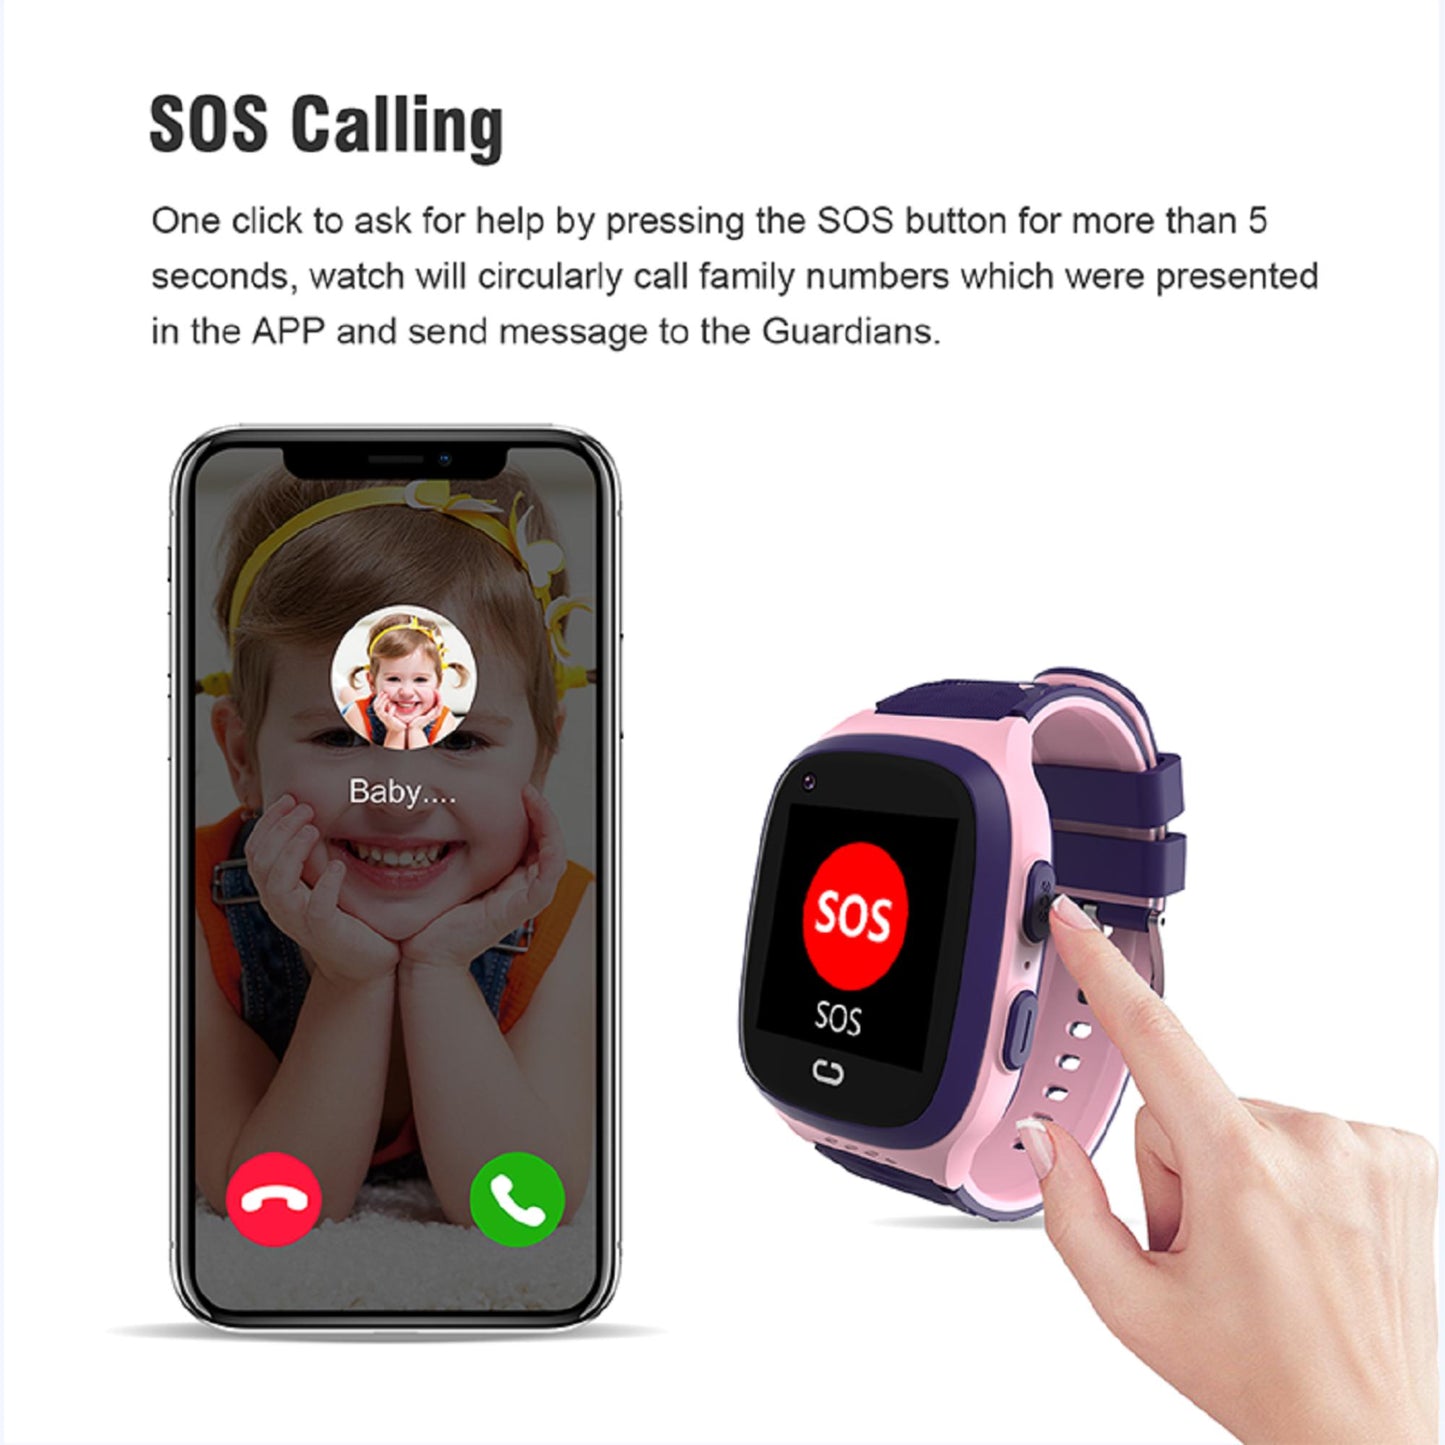 Karen M LT31 Kinder-Smartwatch - 1,4-Zoll-TFT-Bildschirm, 4G-unterstützt, GPS, SOS, Video, Sprach- und Textnachrichten. | Blue Chilli Electronics.